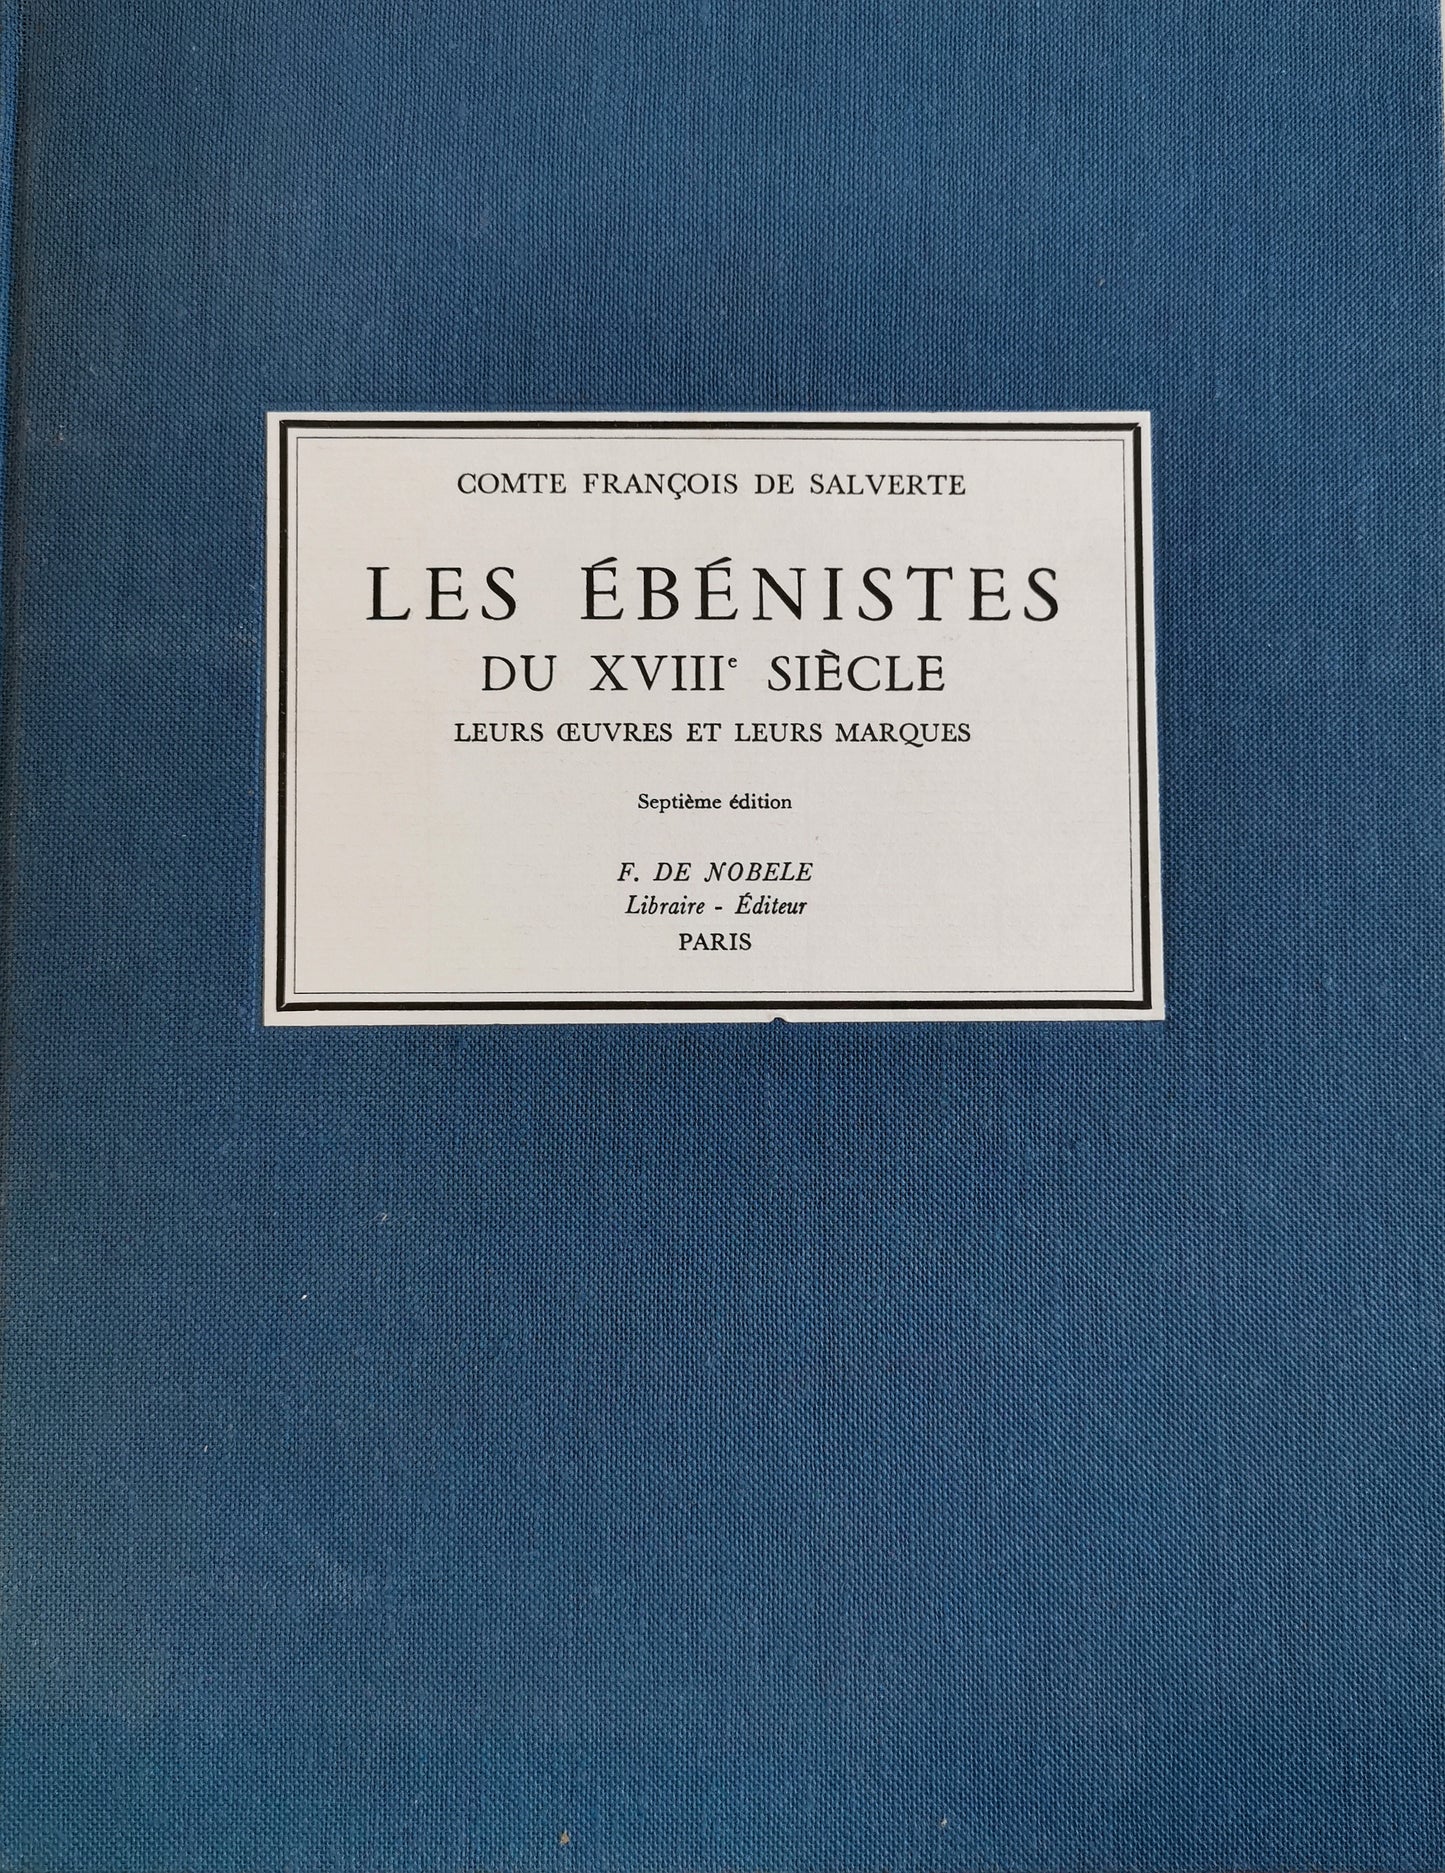 Les Ébénistes du XVIIIe siècle, Leurs œuvres et leurs marques, Comte François de Salverte, Septième édition, ed. F. de Nobele, 1985.